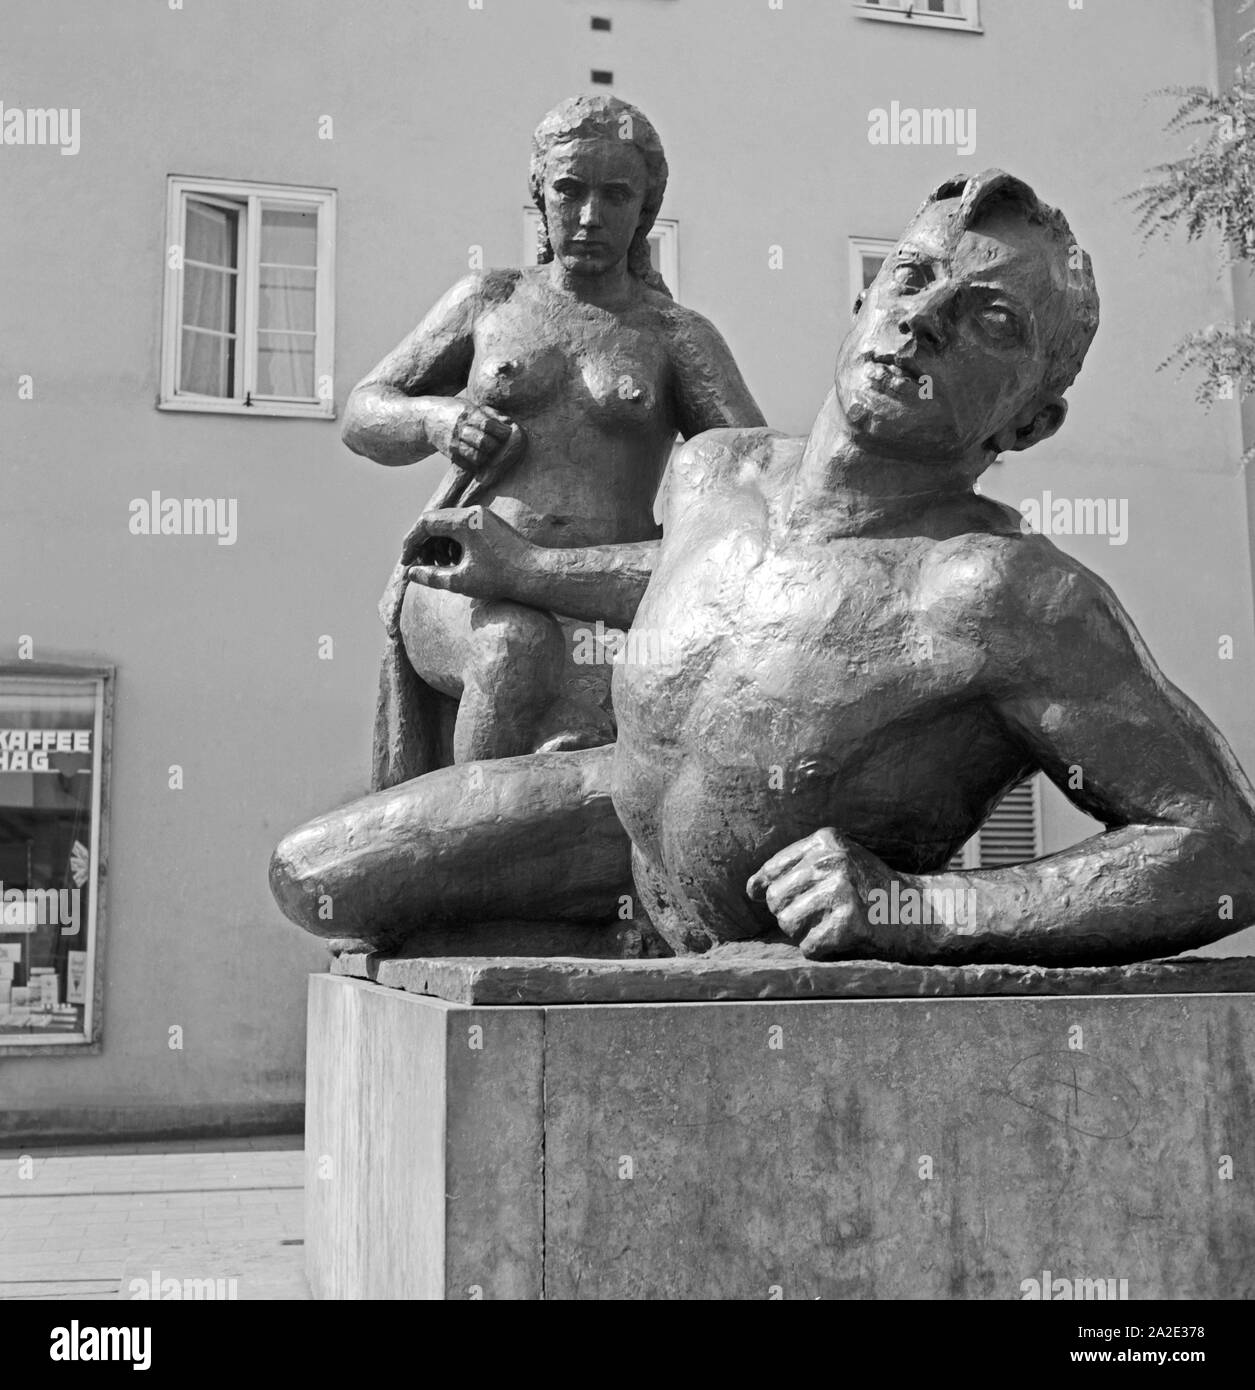 Eine Skulptur in Chemnitz, eine Frau und einen Mann darstellend, Deutschland 1930er Jahre. Sculpture showing a woman and a man at Chemnitz, Germany 1930s. Stock Photo